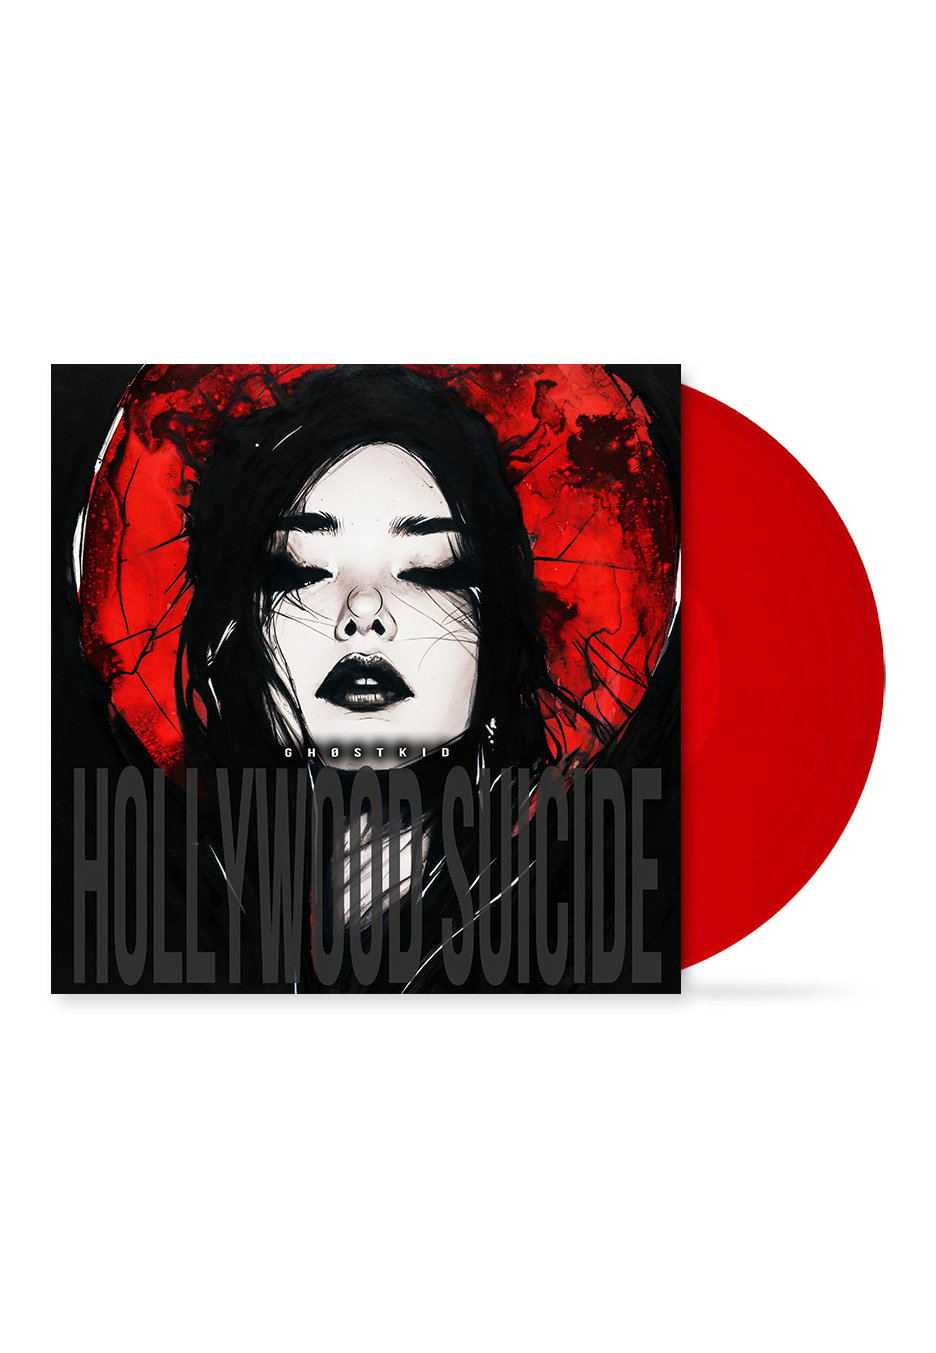 Ghøstkid - Hollywood Suicide Ltd. Transparent Red - Colored Vinyl